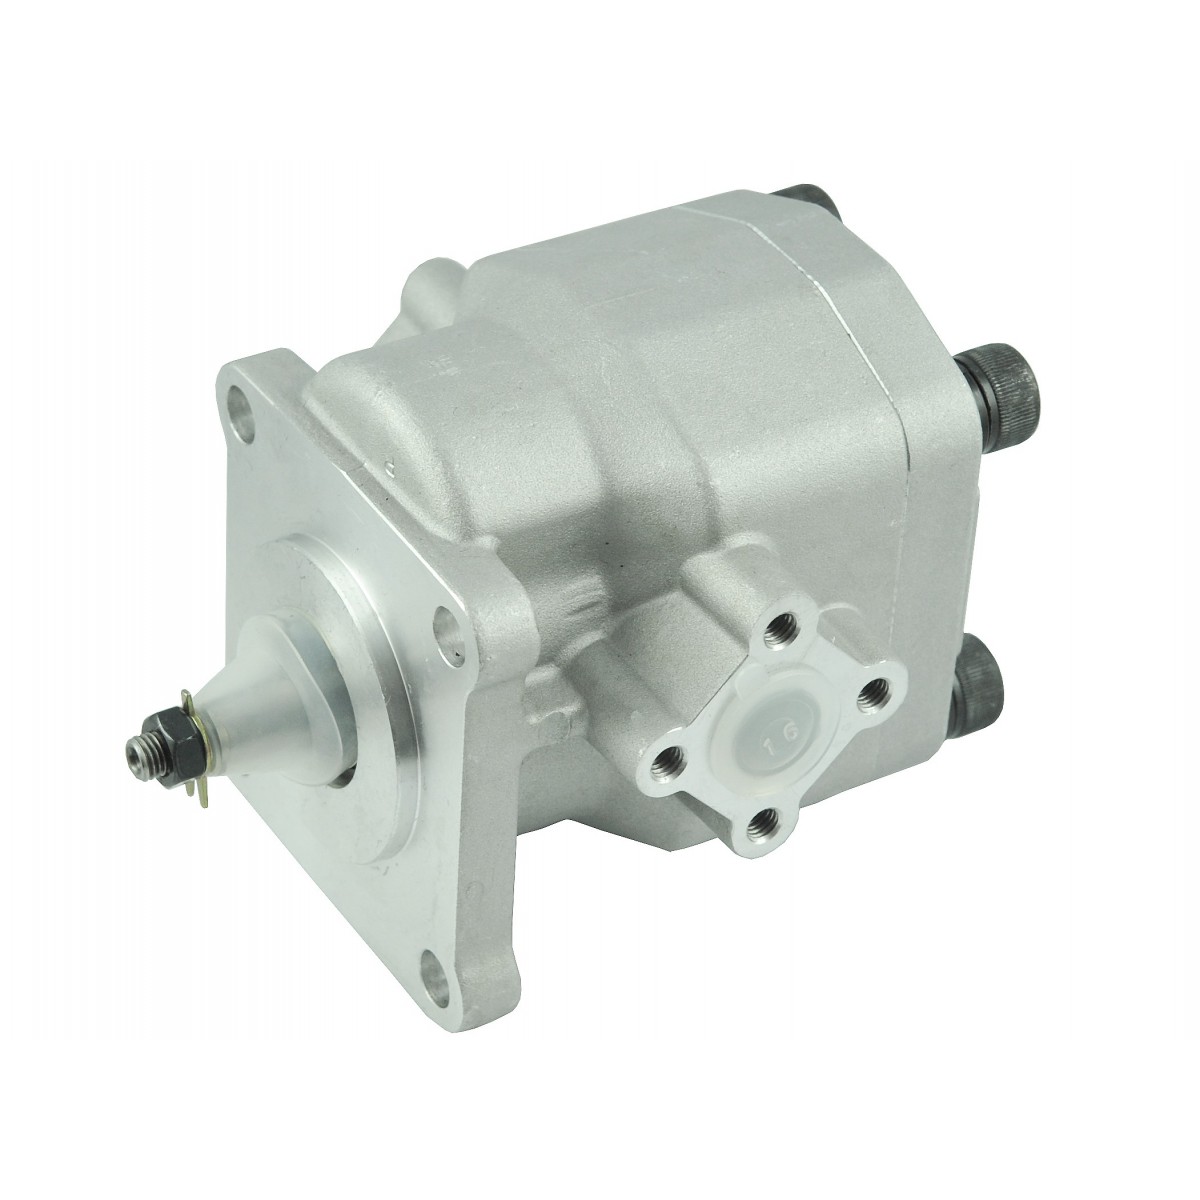 Hydraulic pump 37150-3610, 35110-76101, Kubota L, Massey Ferguson 205